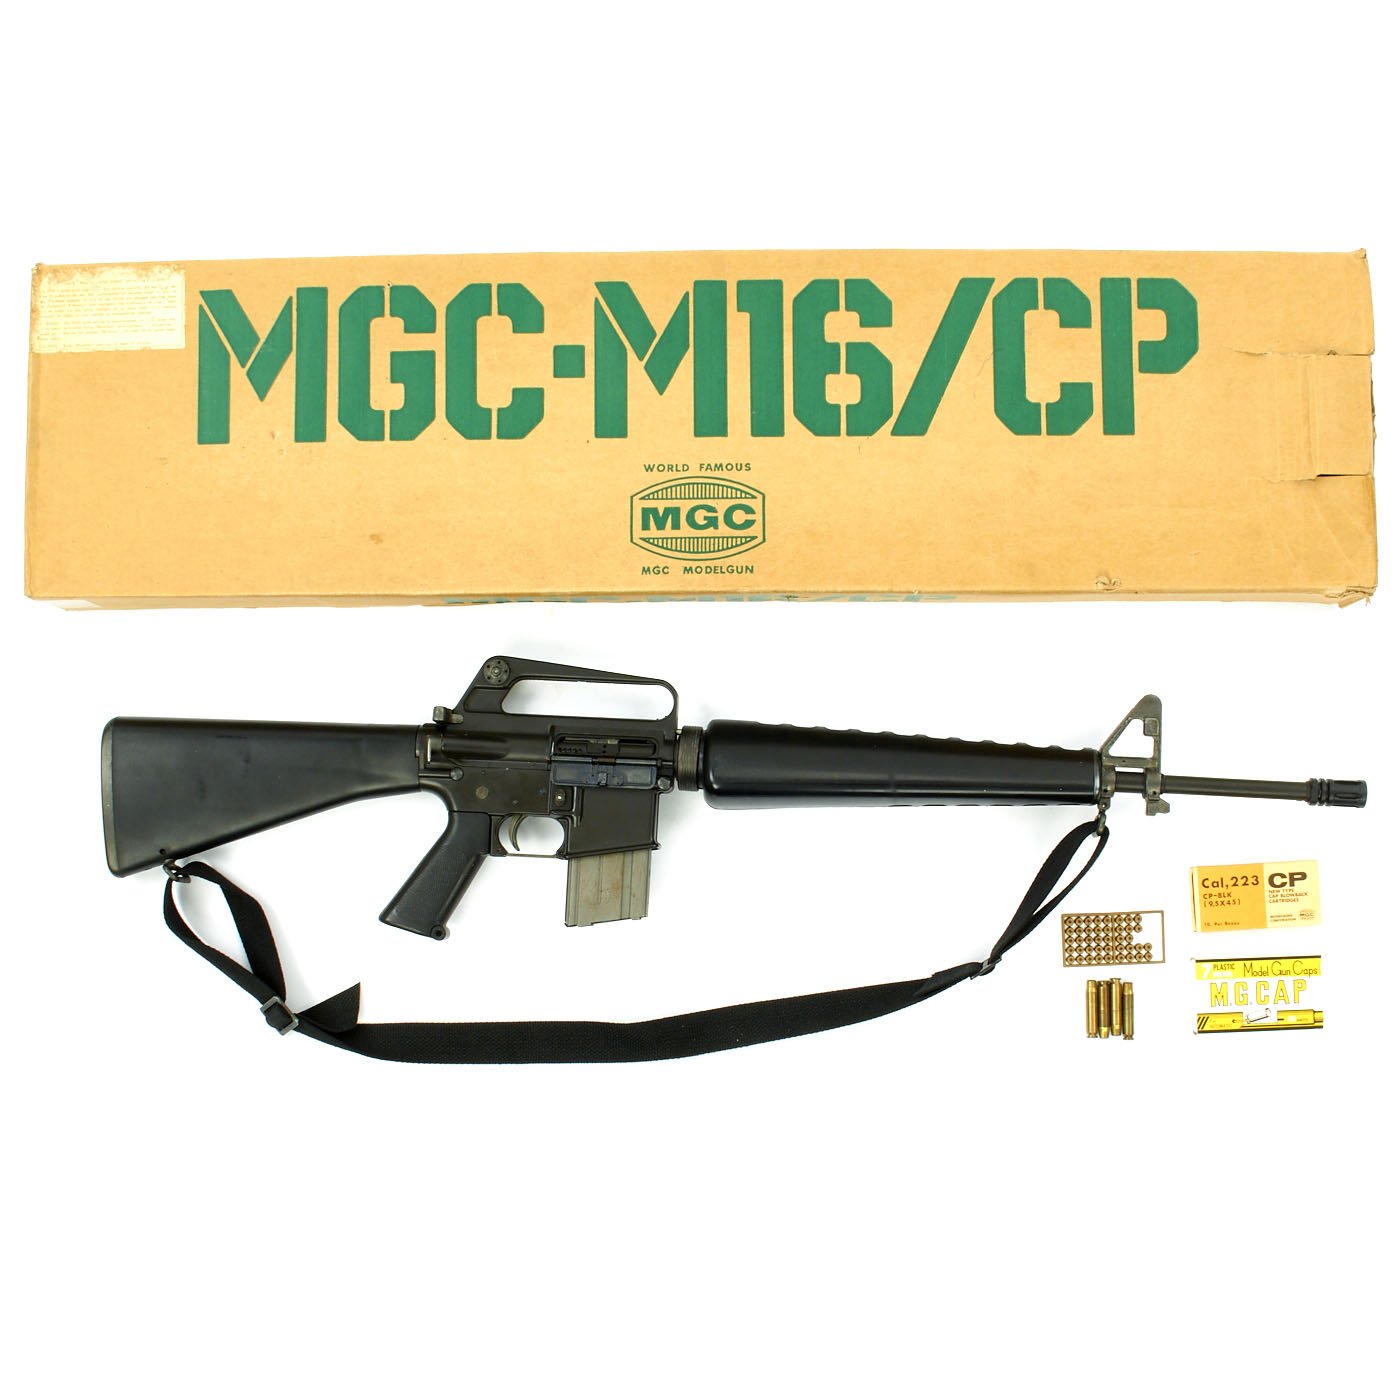 MGC M16A1